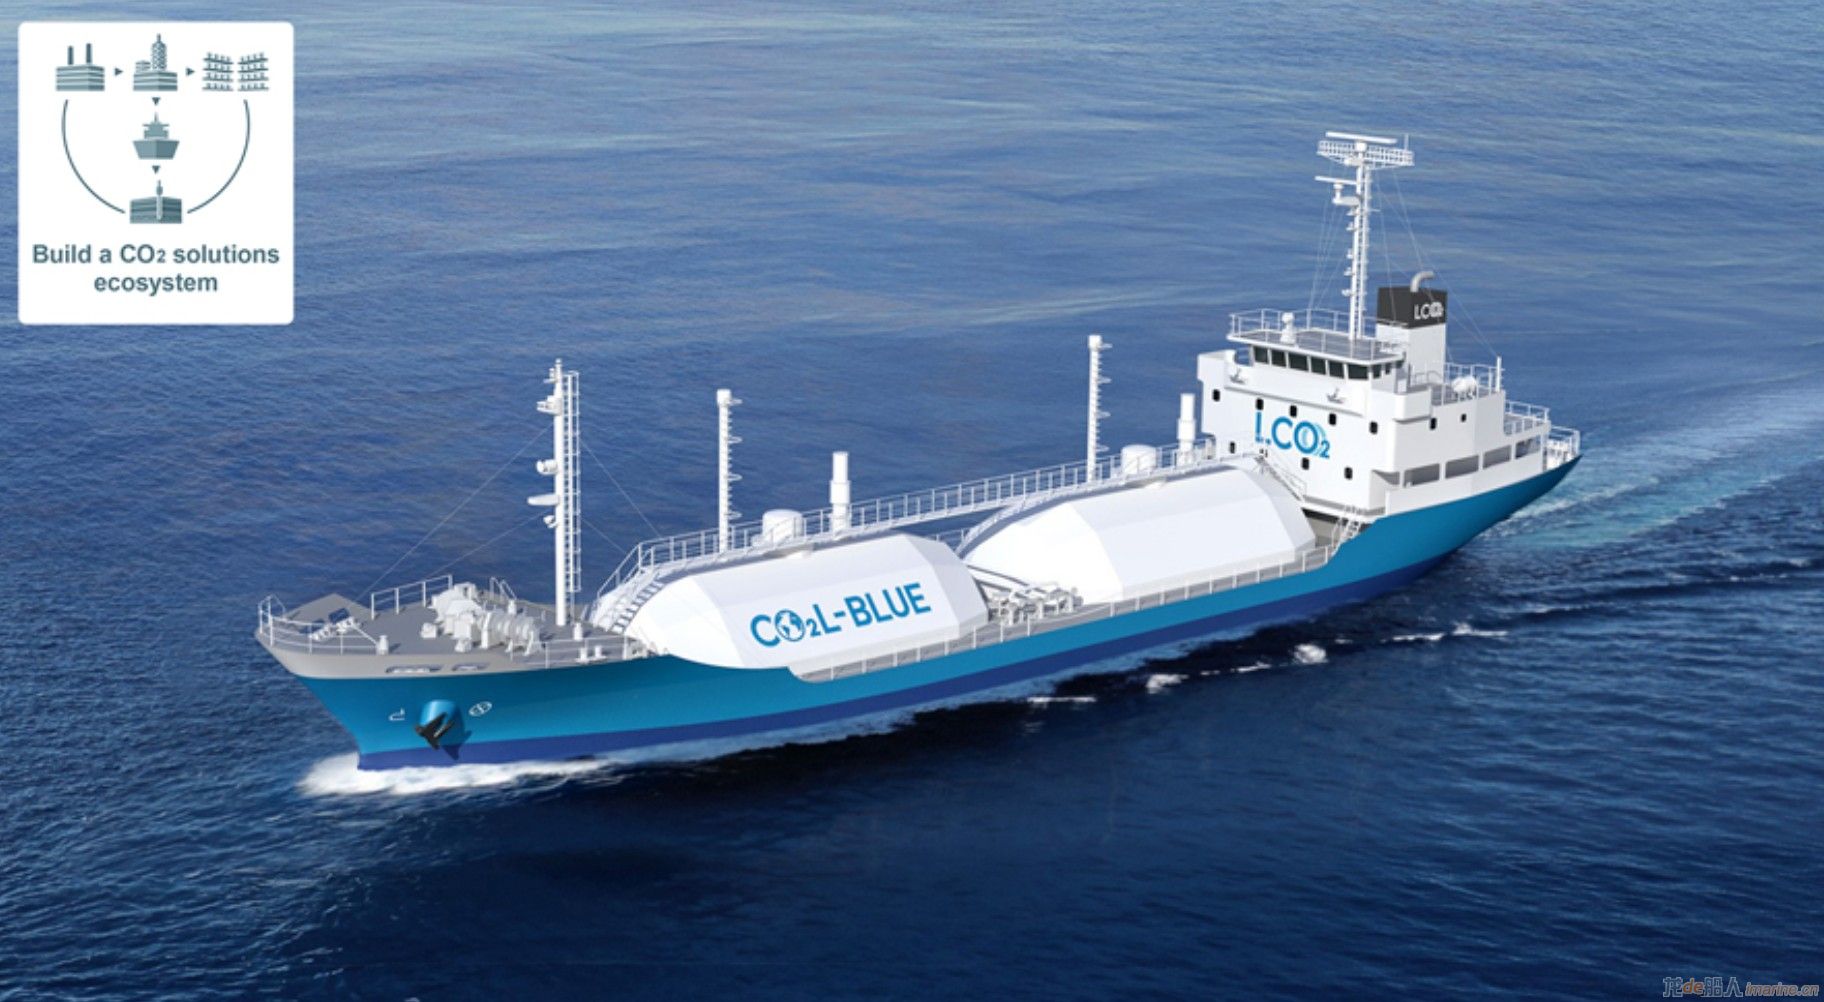 [清洁能源]世界首艘CCUS液化二氧化碳运输船铺龙骨,